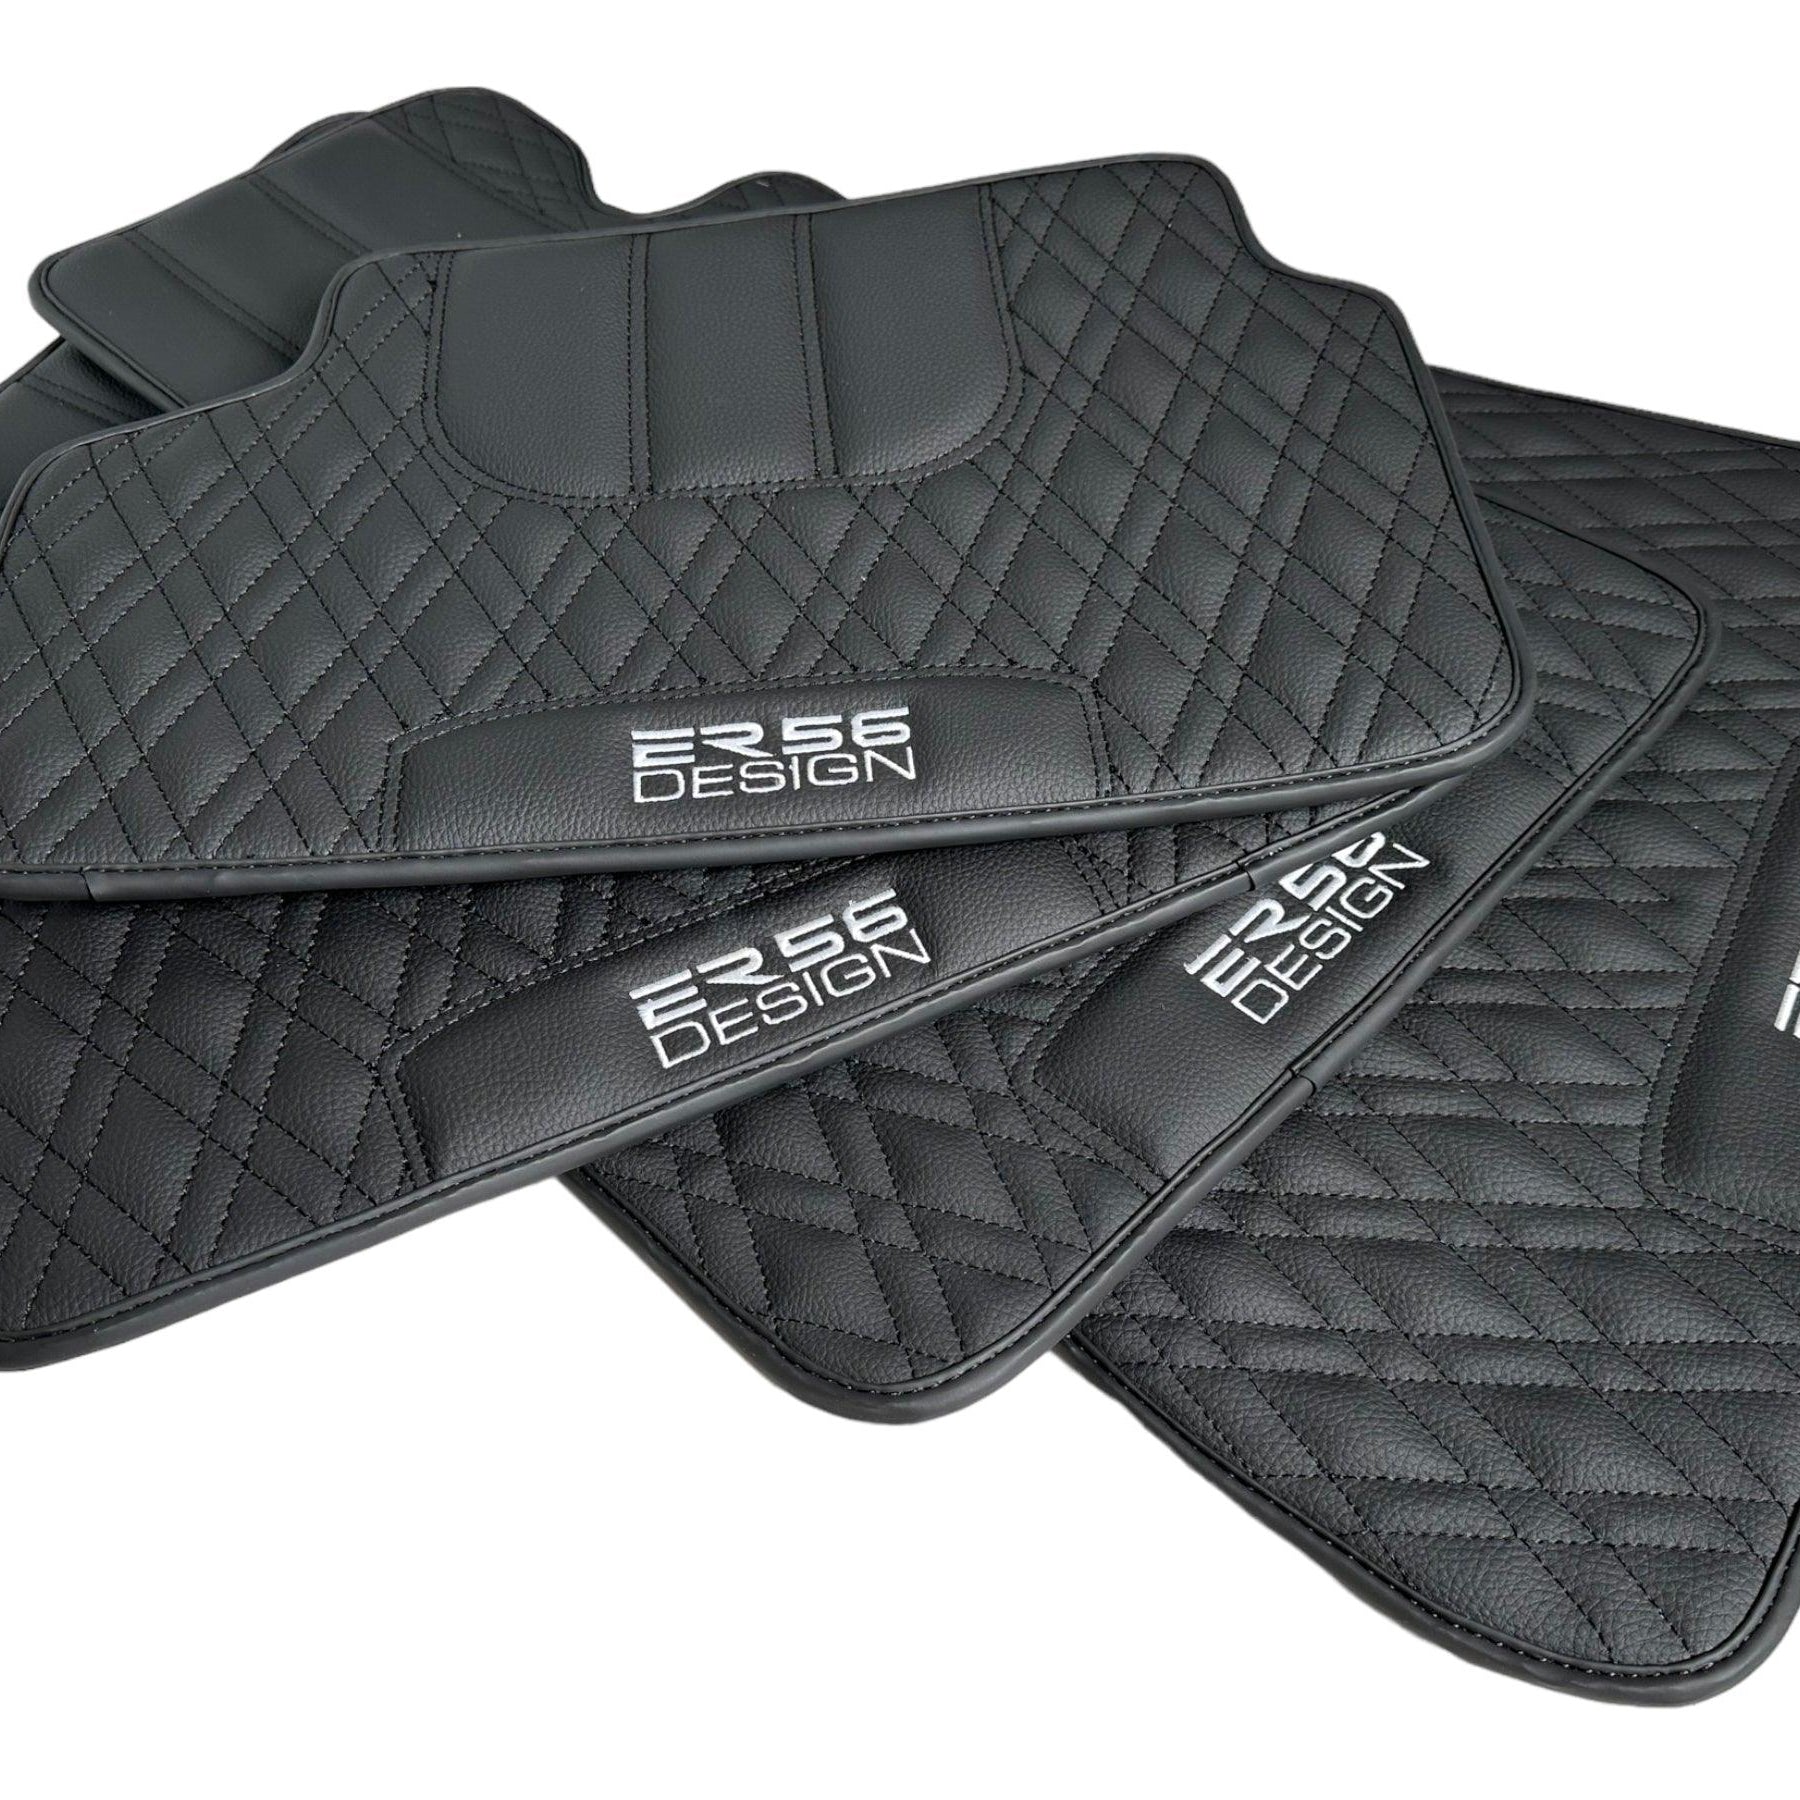 Floor Mats For BMW 1 Series F21 3-door Hatchback Black Leather Er56 Design - AutoWin